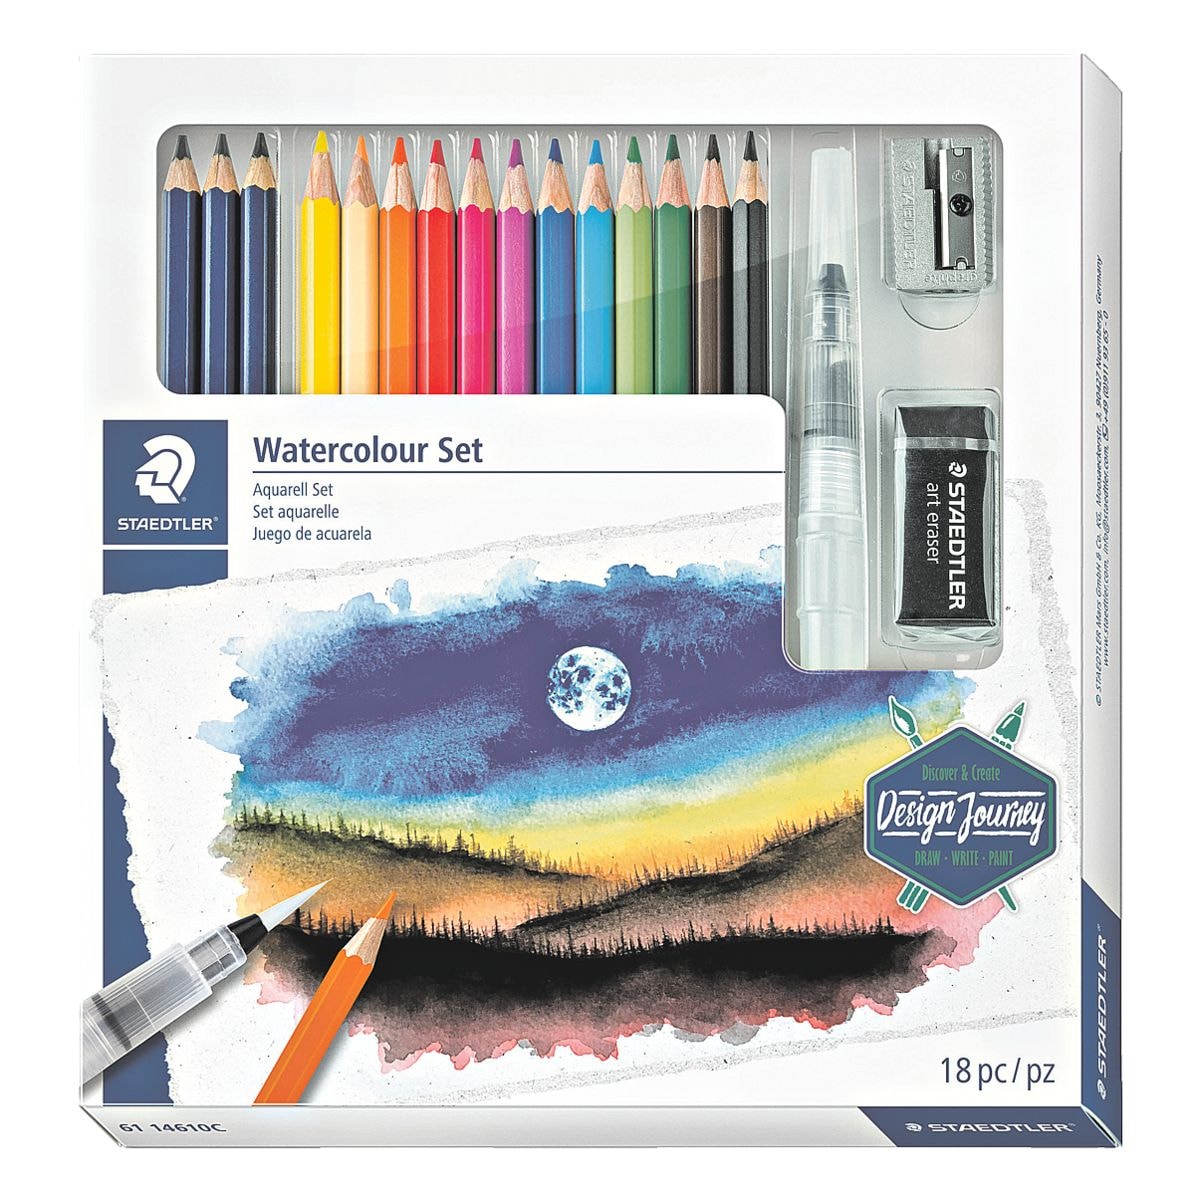 STAEDTLER Paquet de 12 crayons de couleur hydrosolubles Design Journey avec 3 crayons hydrosolubles